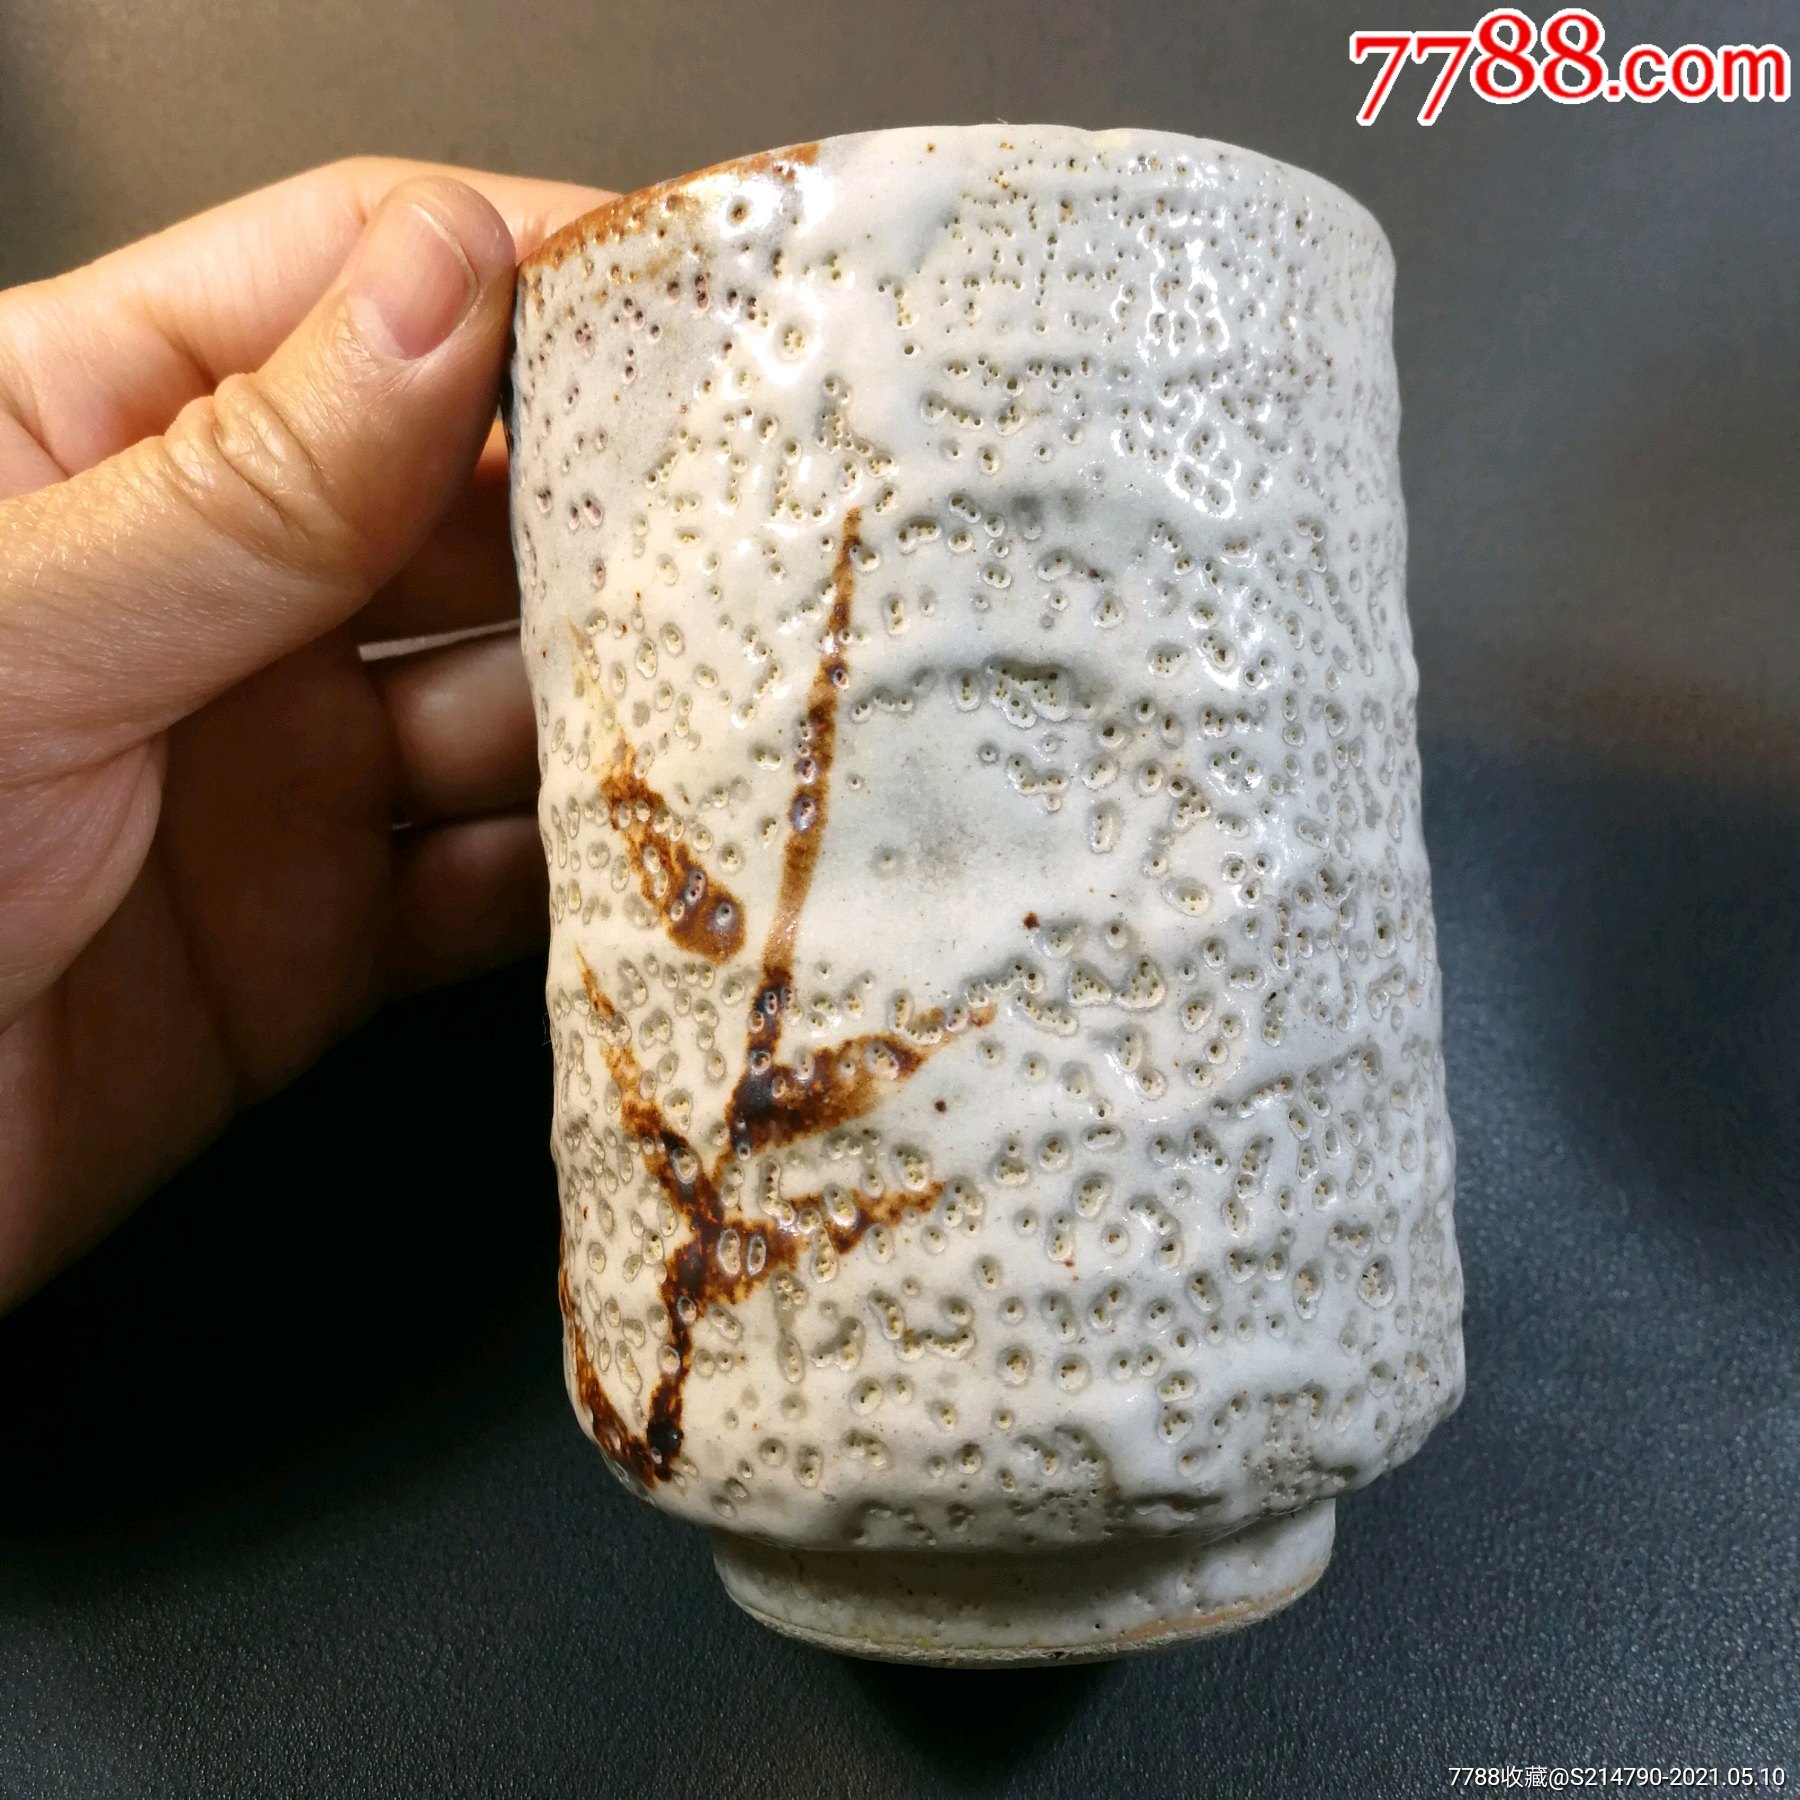 日本著名瓷器志野烧虫蛀铁锈花水杯,高115宽7